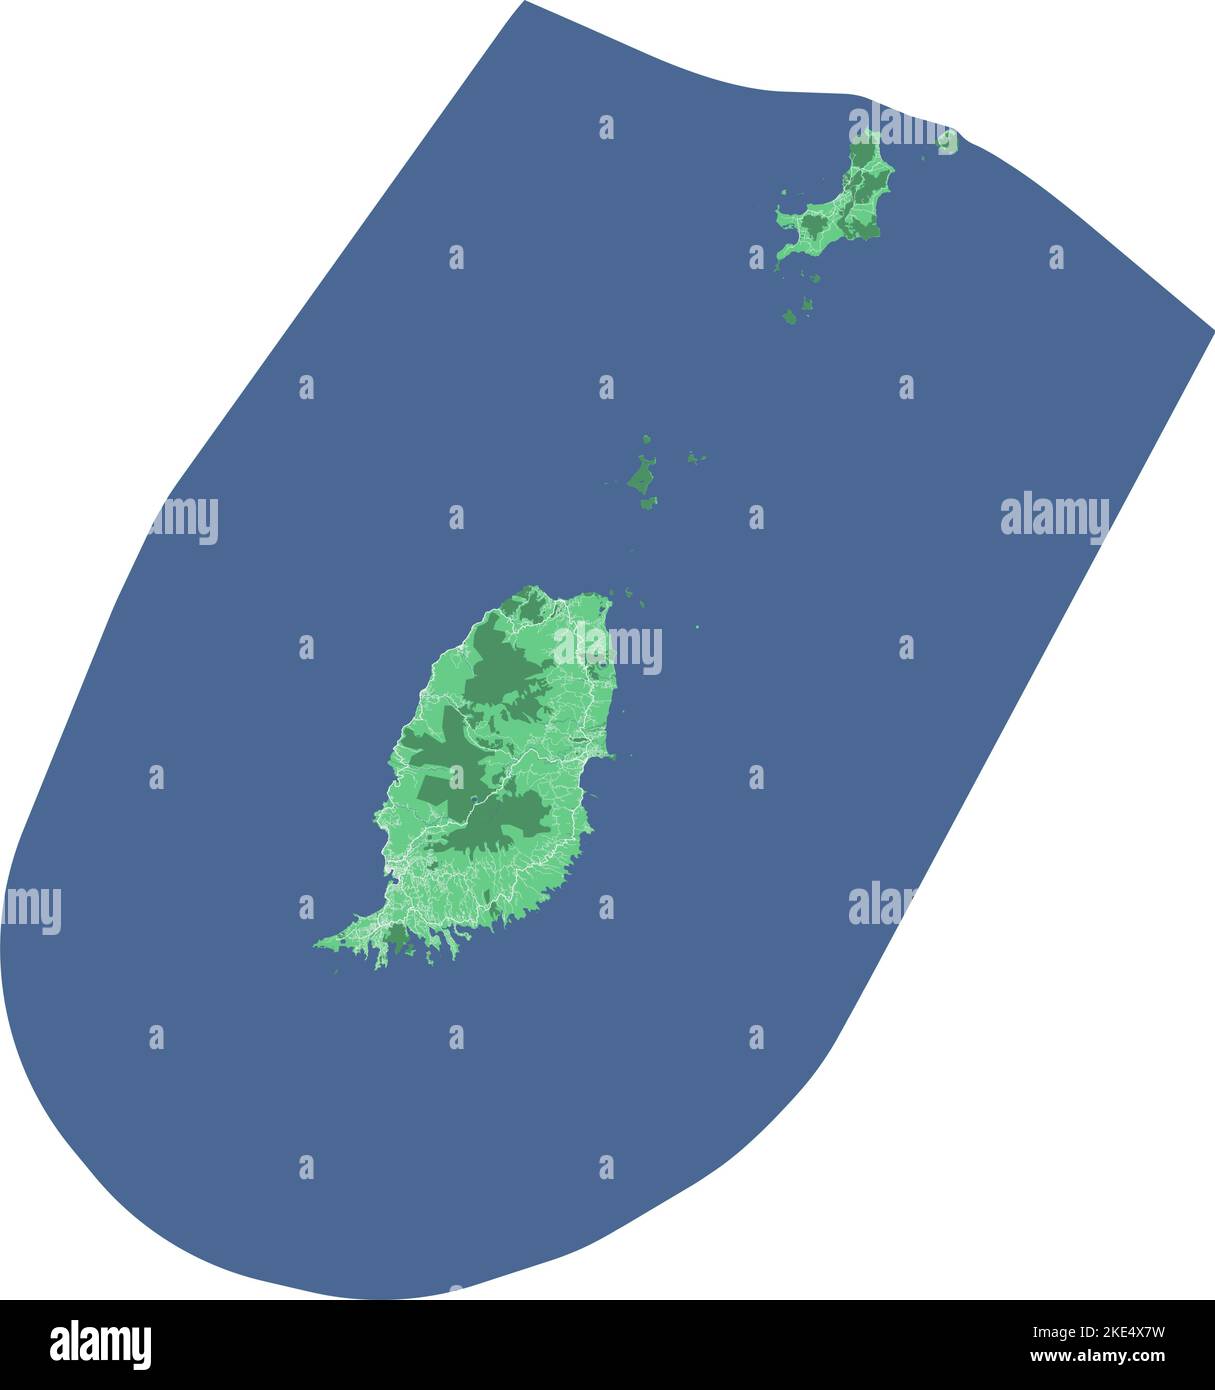 Carte de Grenade, pays des Caraïbes. Carte détaillée avec frontière administrative, bâtiments, mer et forêts, villes et routes. Illustration de Vecteur